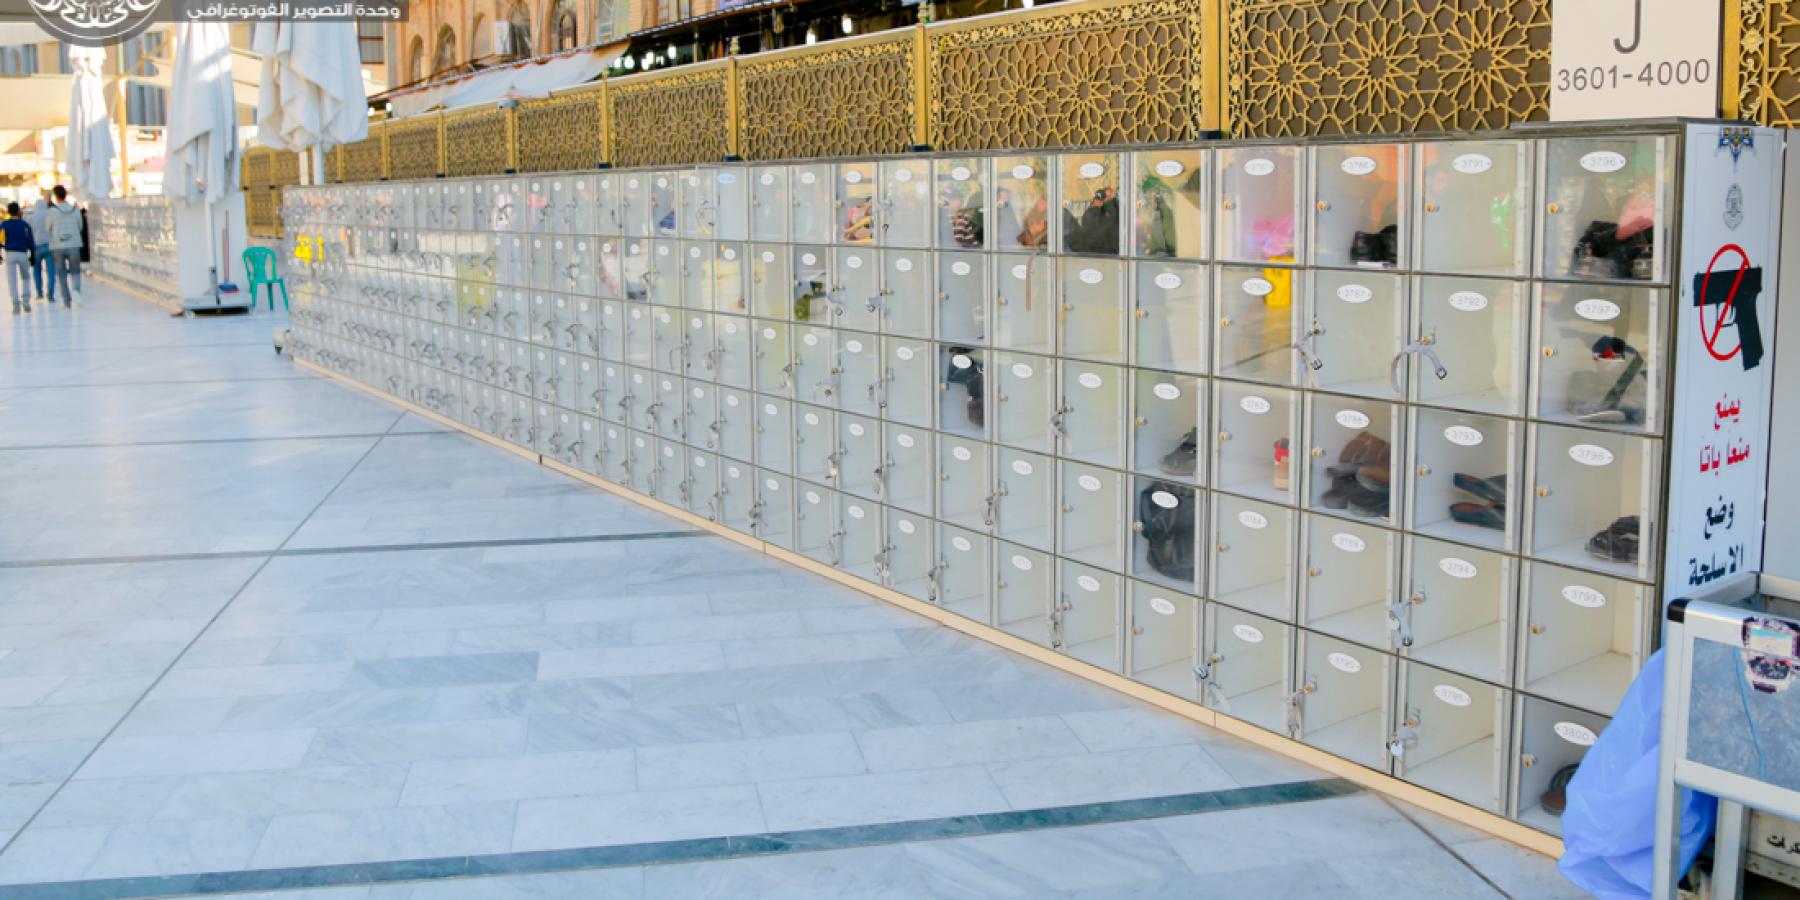           نشر أكثر من عشرة آلاف صندوق لحفظ أمانات الزائرين في المناطق المحيطة بالعتبة العلوية المقدسة 